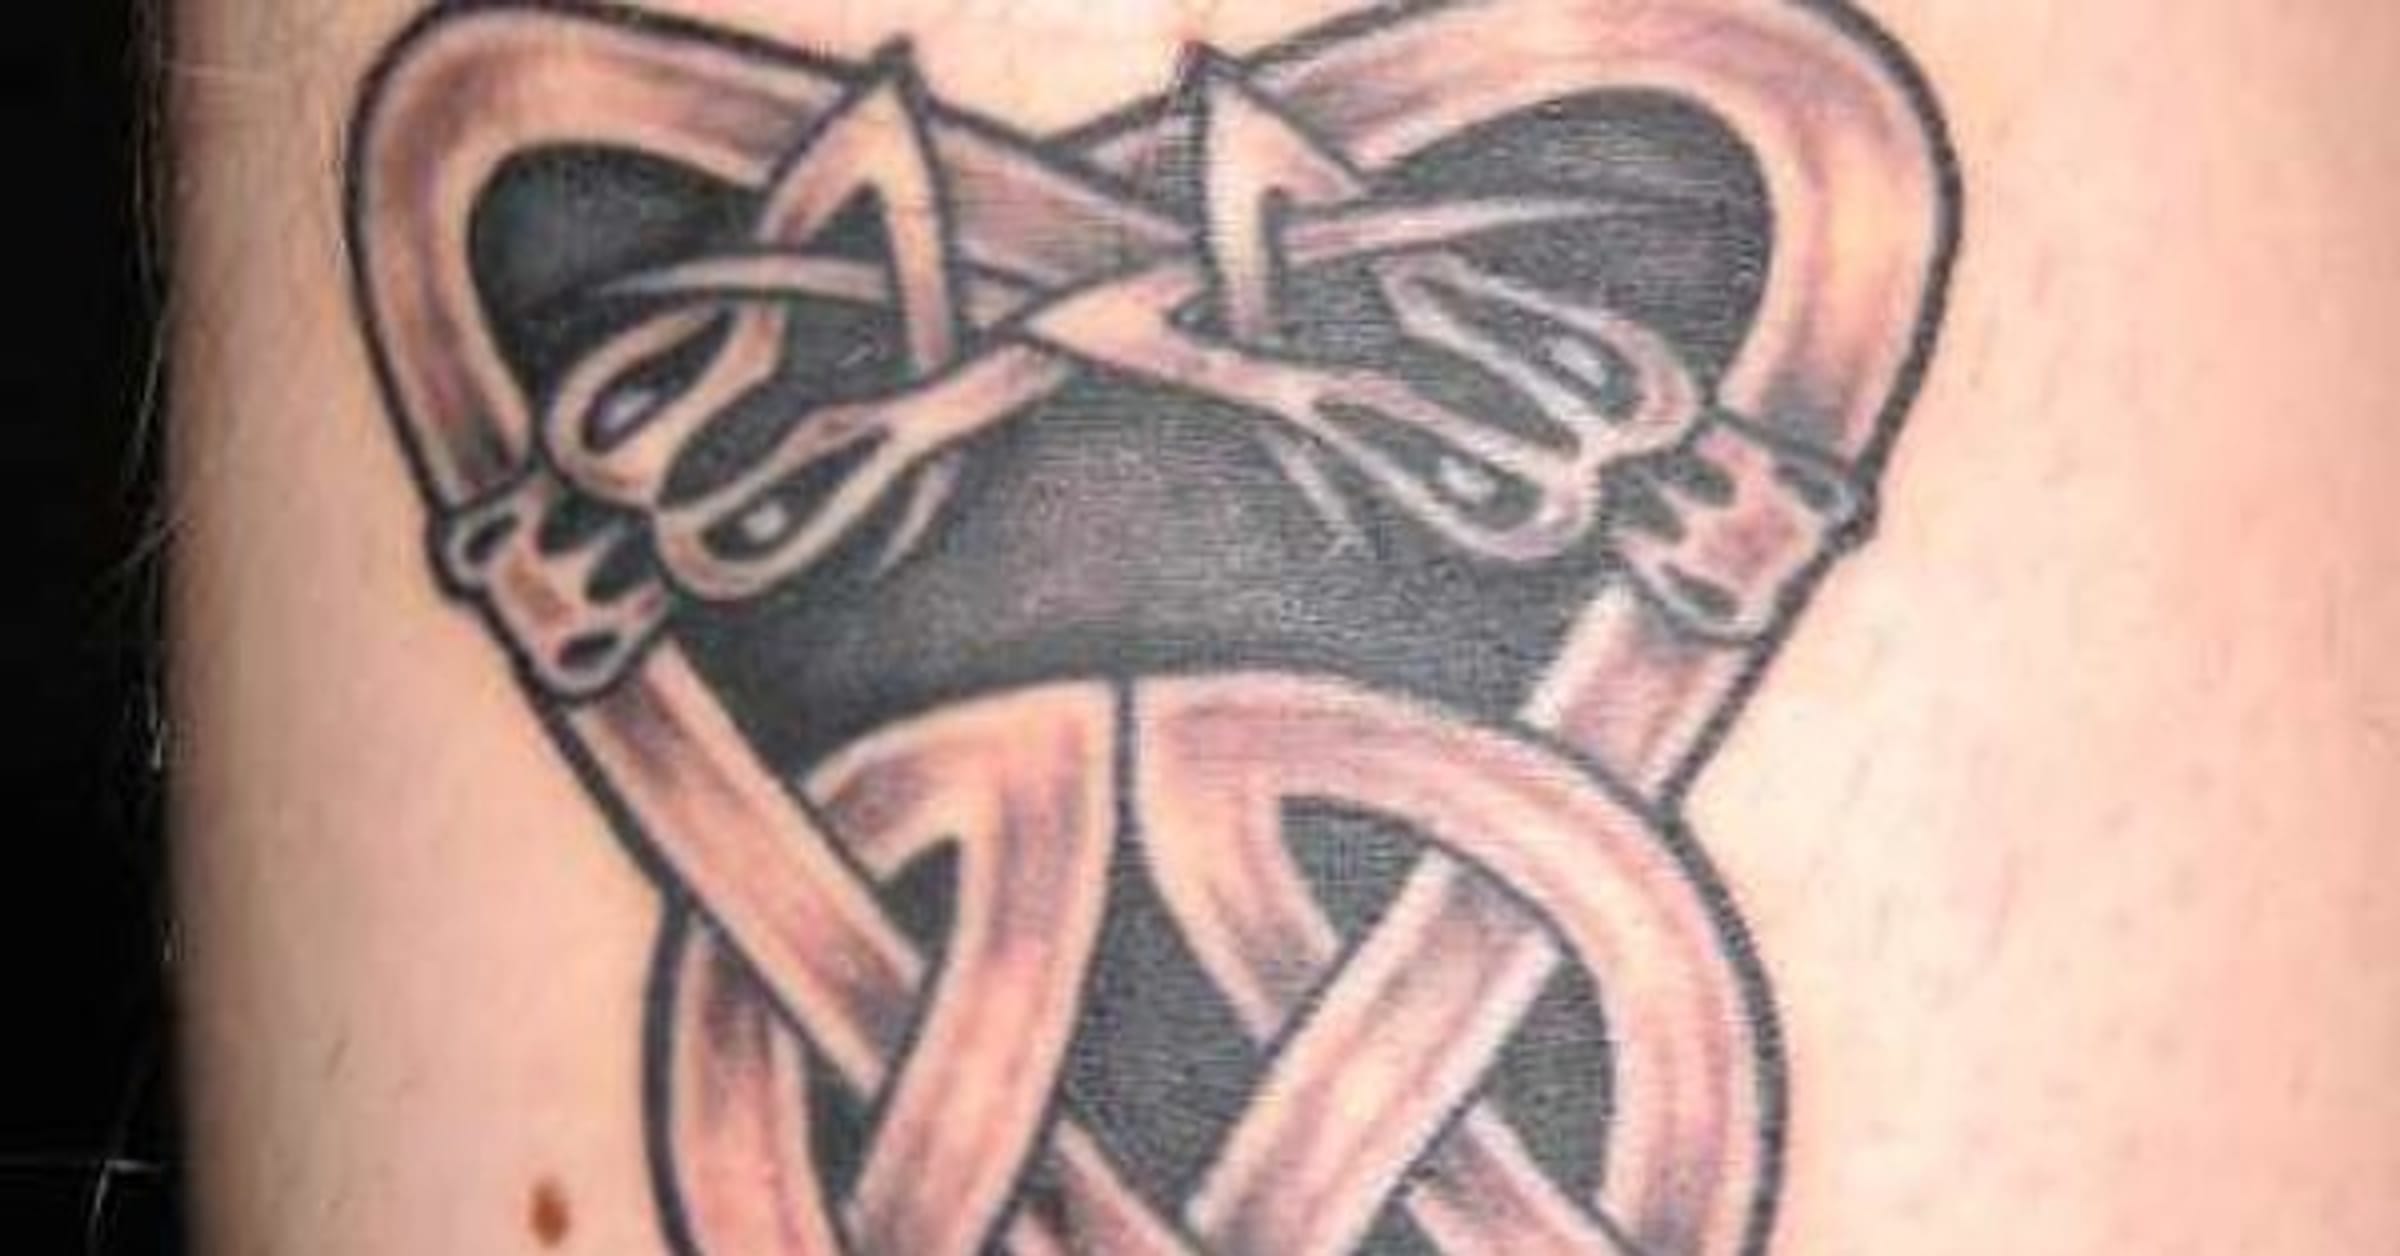 celtic cross tattoos designs for men